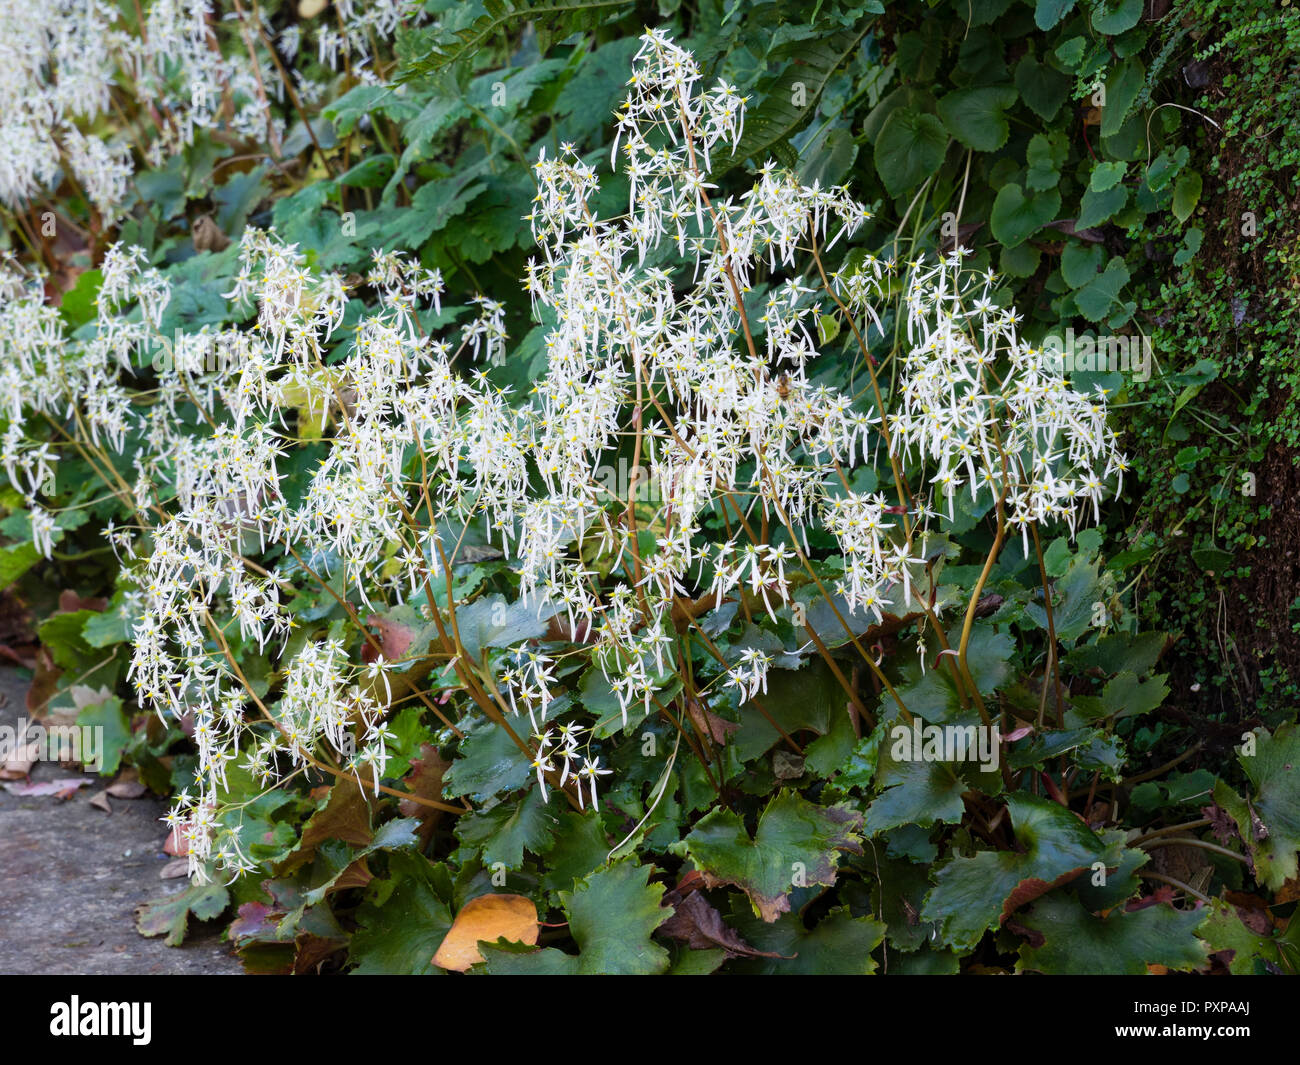 Weiß Herbst Blumen Der winterharte Staude Wald Pflanze, Saxifraga undulata Stockfoto